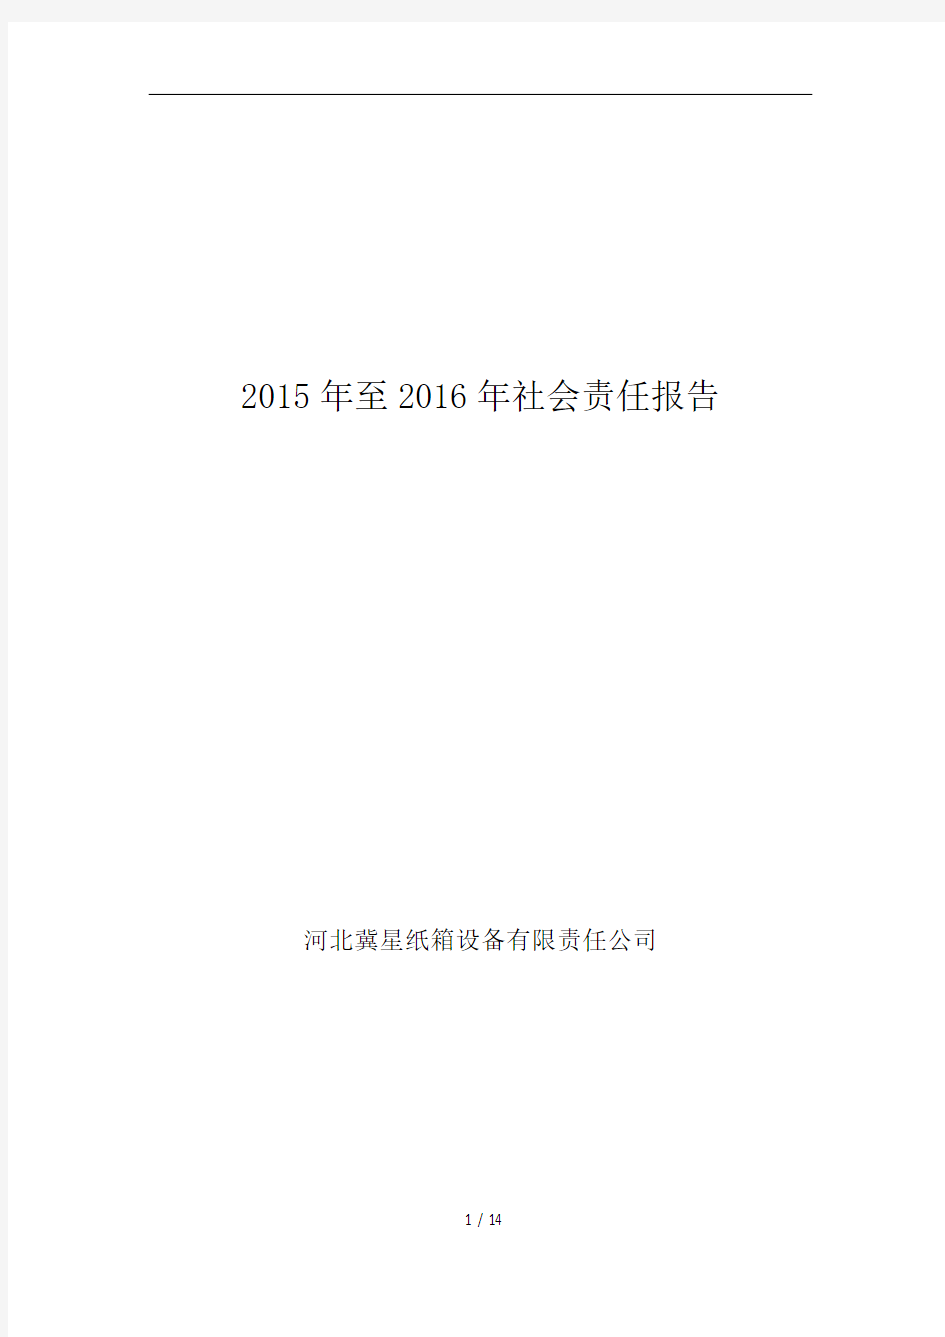 2015年至2016年社会责任报告